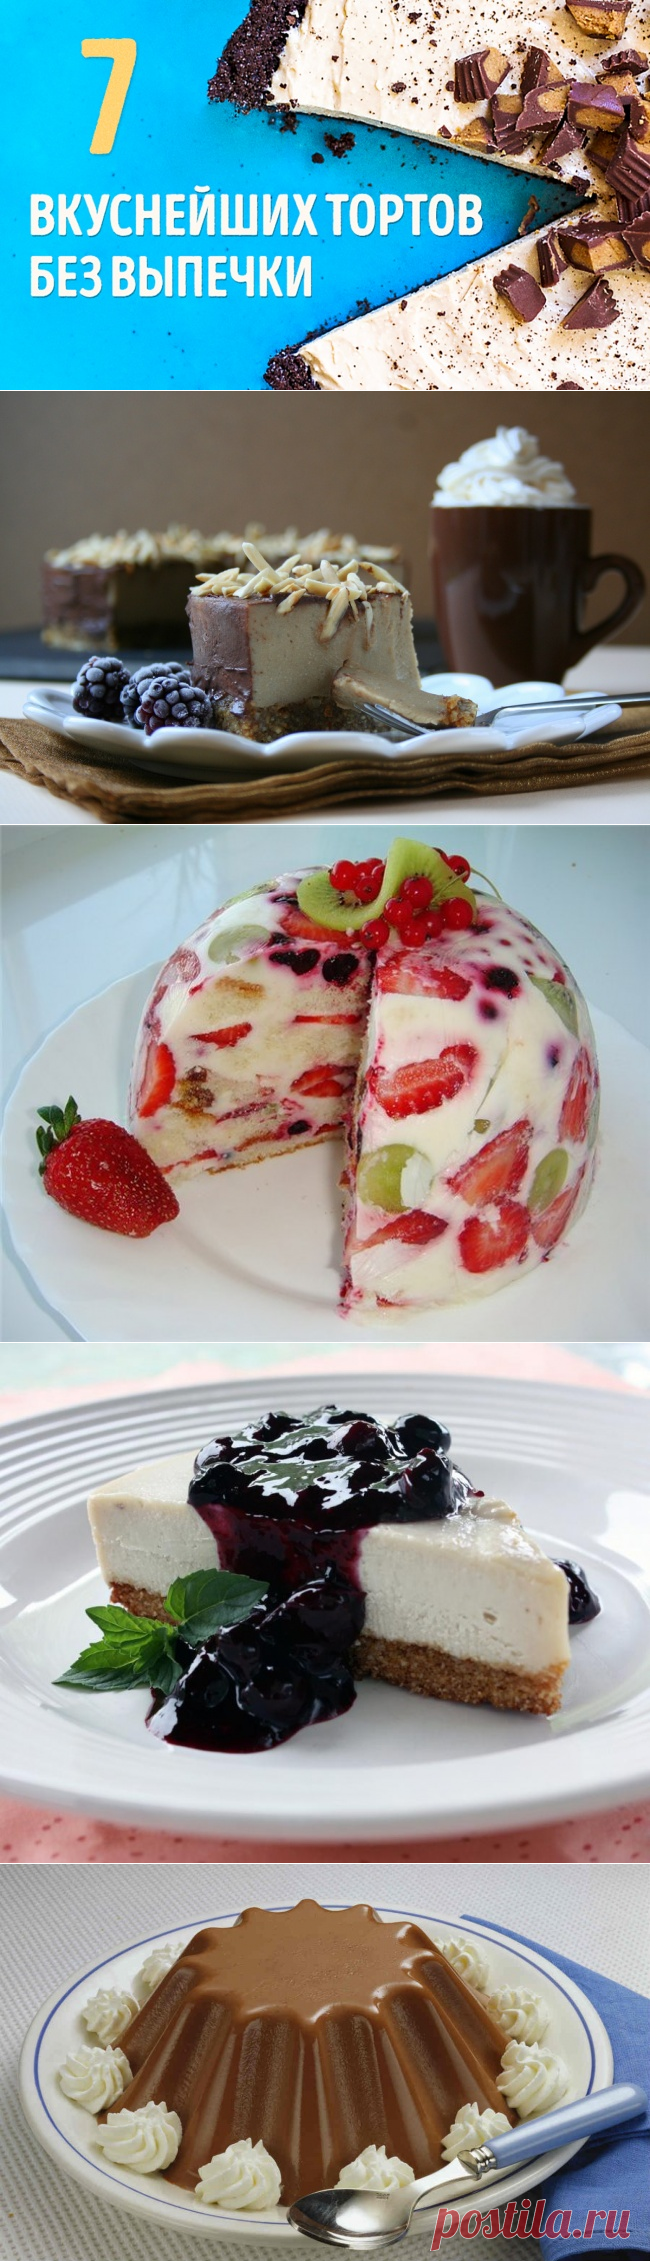 7 вкуснейших тортов без выпечки | Fresher - Лучшее из Рунета за день!